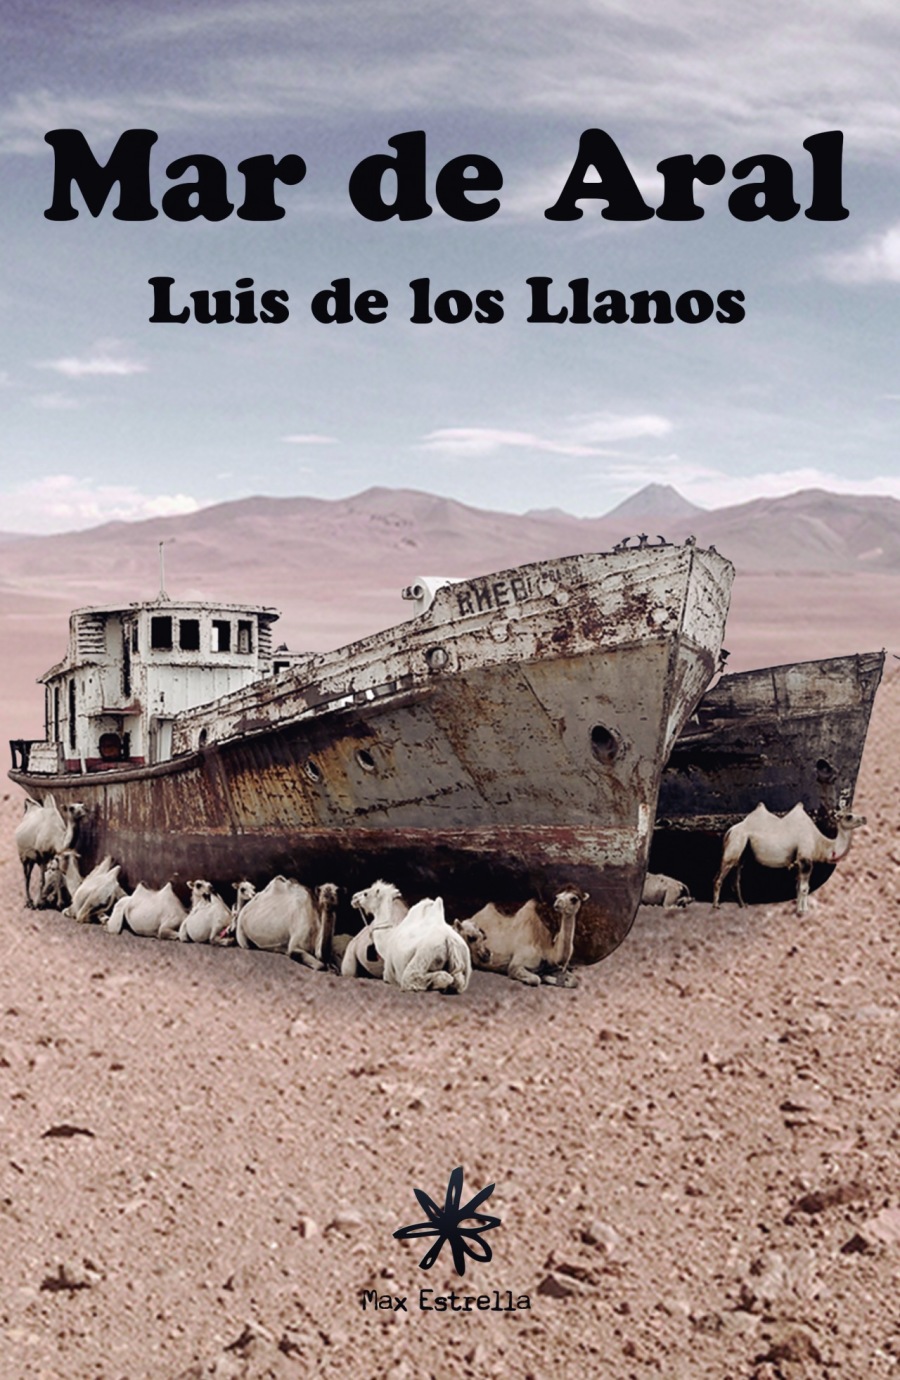 Mar de Aral

Luis de los Llanos